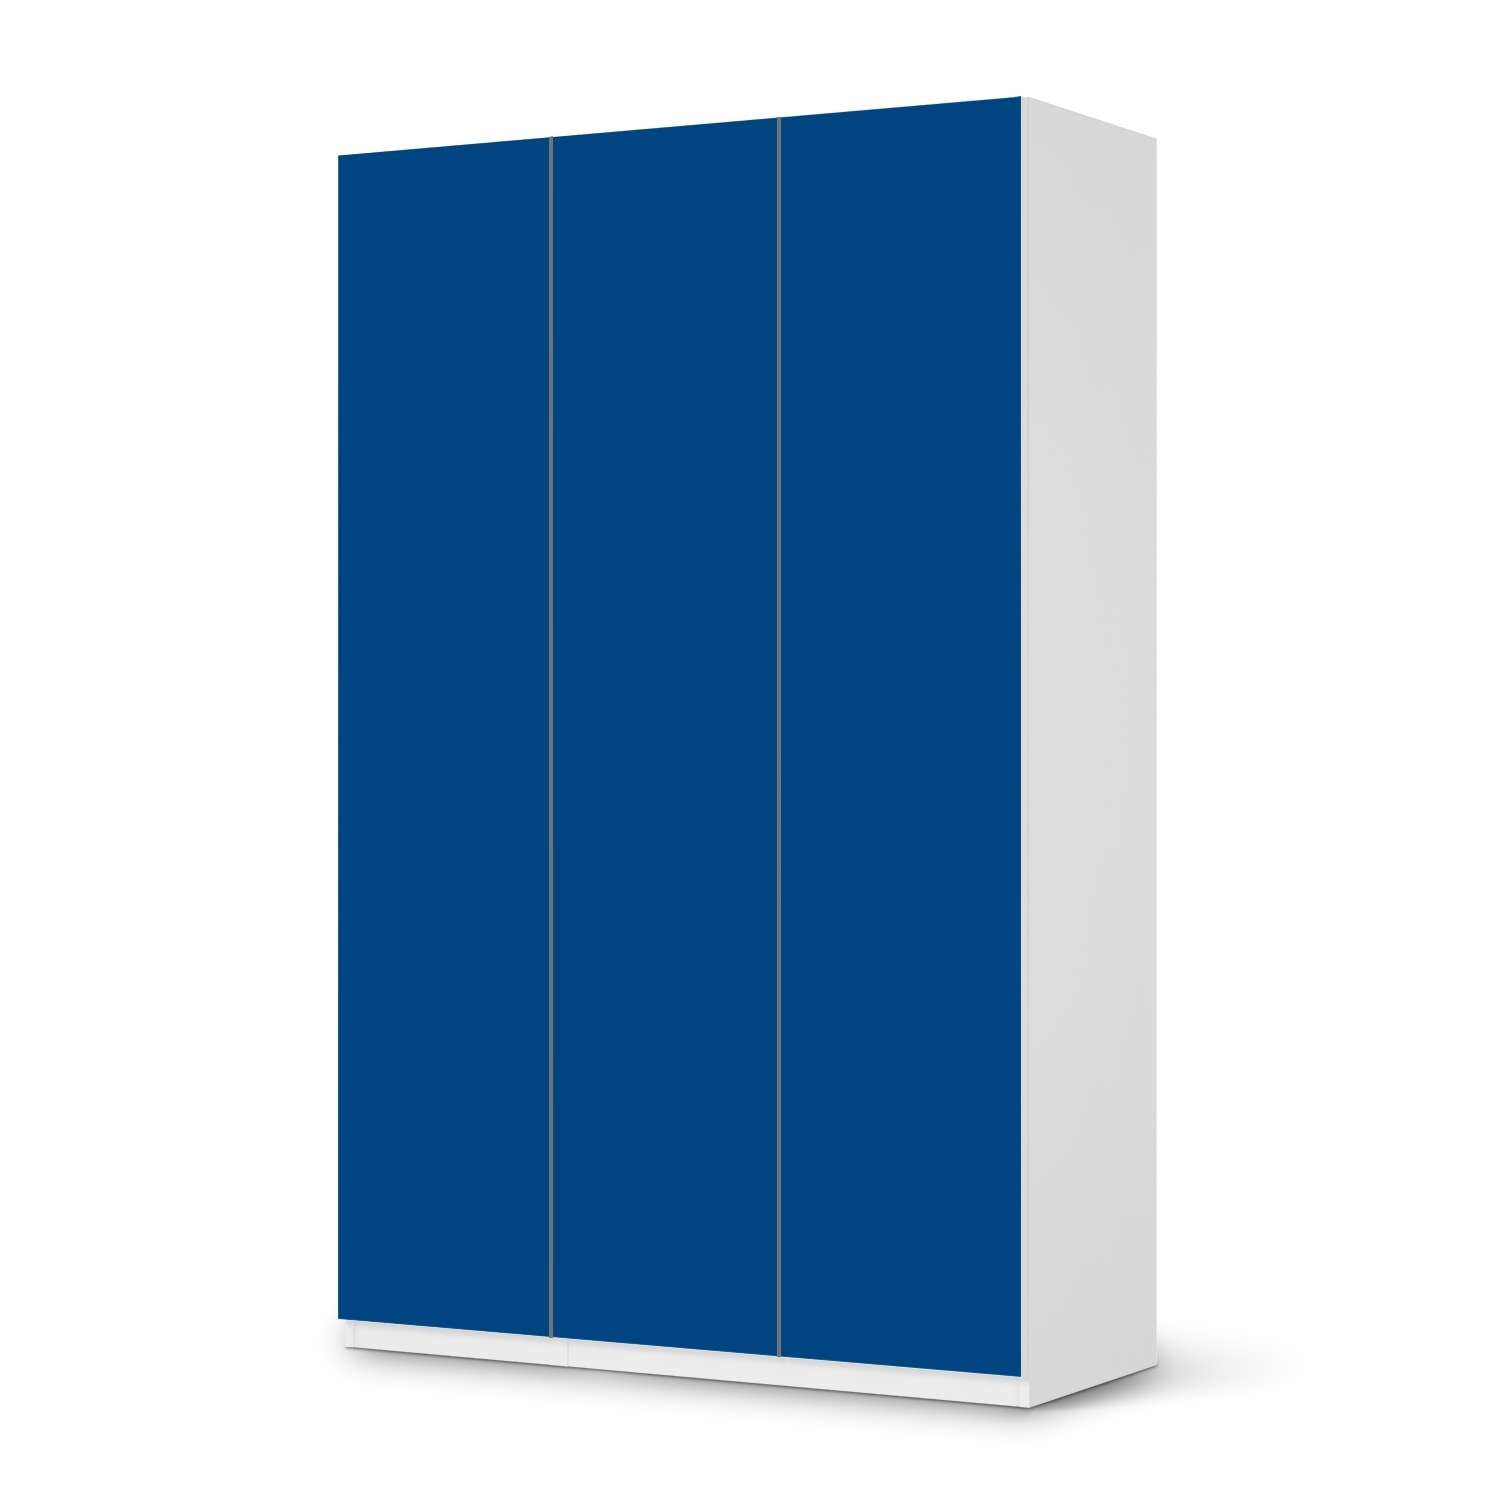 Selbstklebende Folie IKEA Pax Schrank 236 cm H?he - 3 T?ren - Design: Blau Dark von creatisto